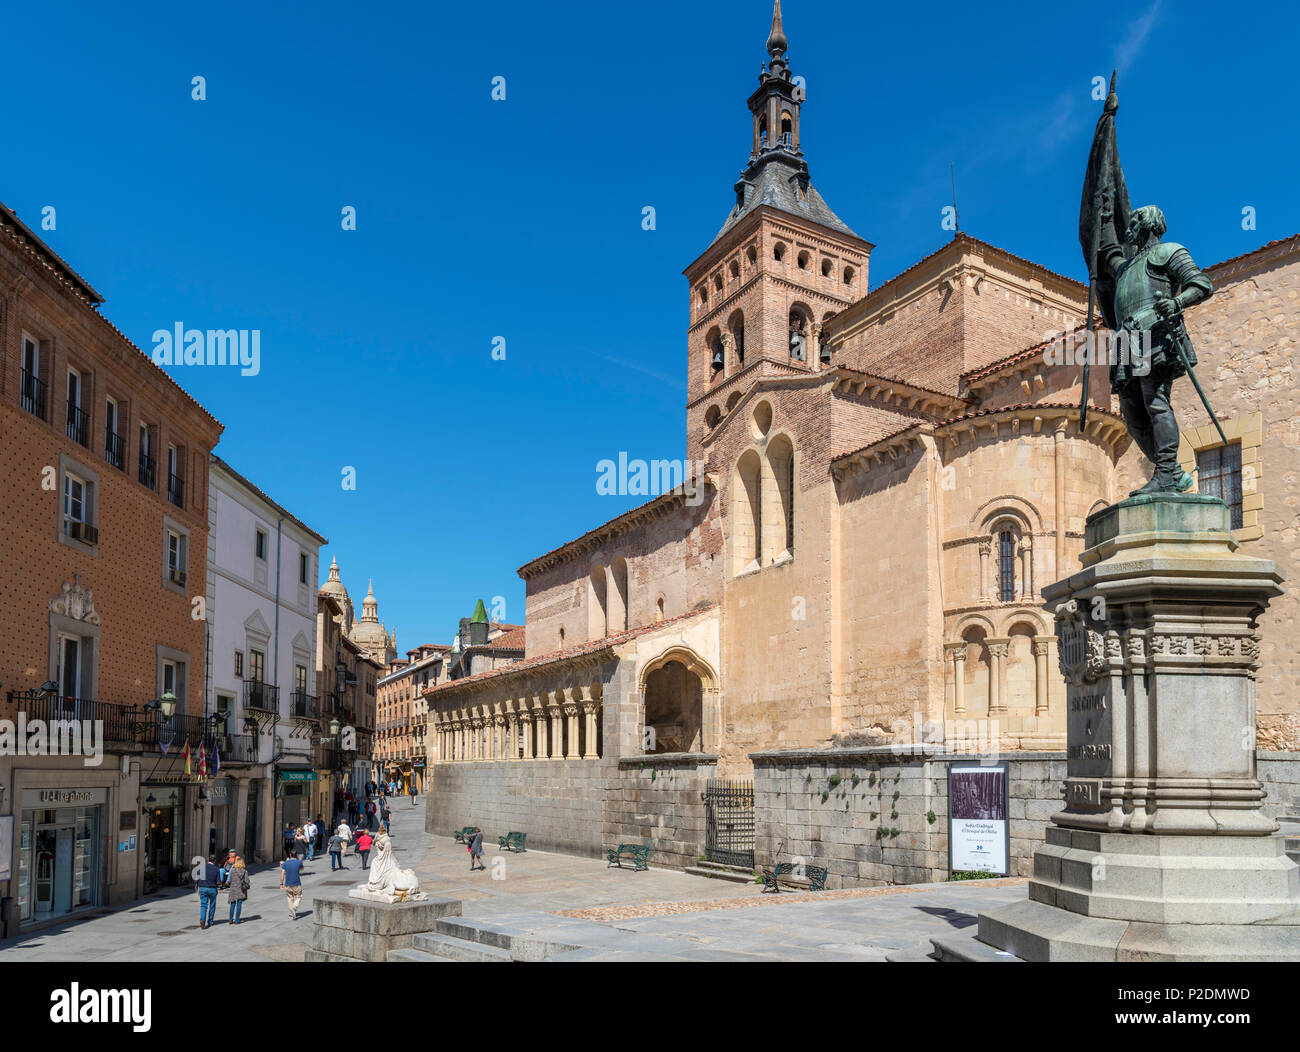 Segovia, dolore. Plaza de San Martin, la chiesa di San Martino e la statua di Juan Bravo, Segovia, Castilla y Leon, Spagna Foto Stock